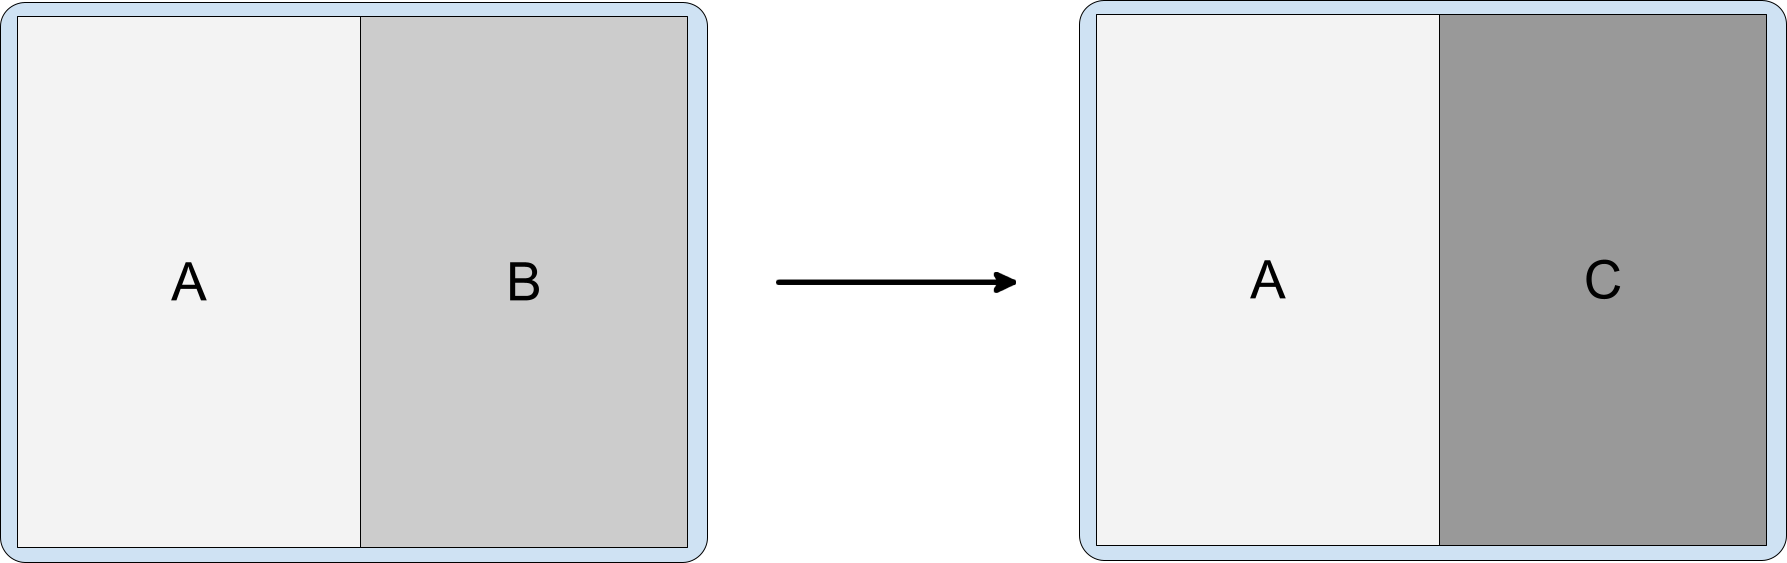 Hoạt động phân chia có chứa các hoạt động A, B và C, trong đó C nằm chồng lên B.